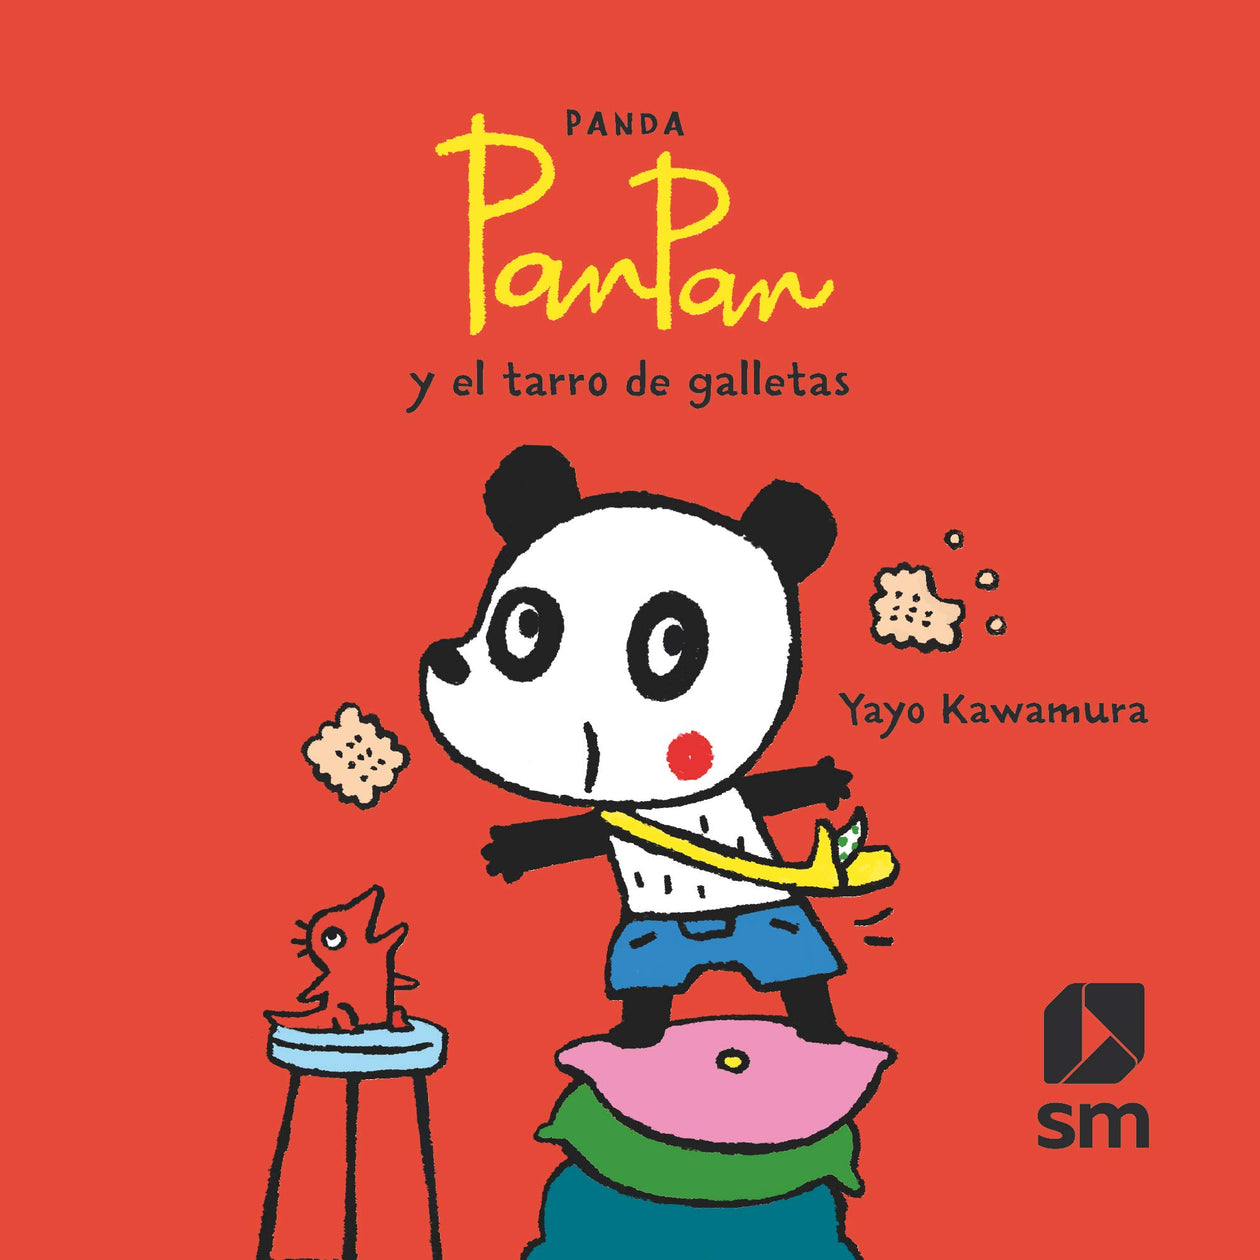 Yayo Kawamura: Panda Pan Pan  y el tarros de galletas